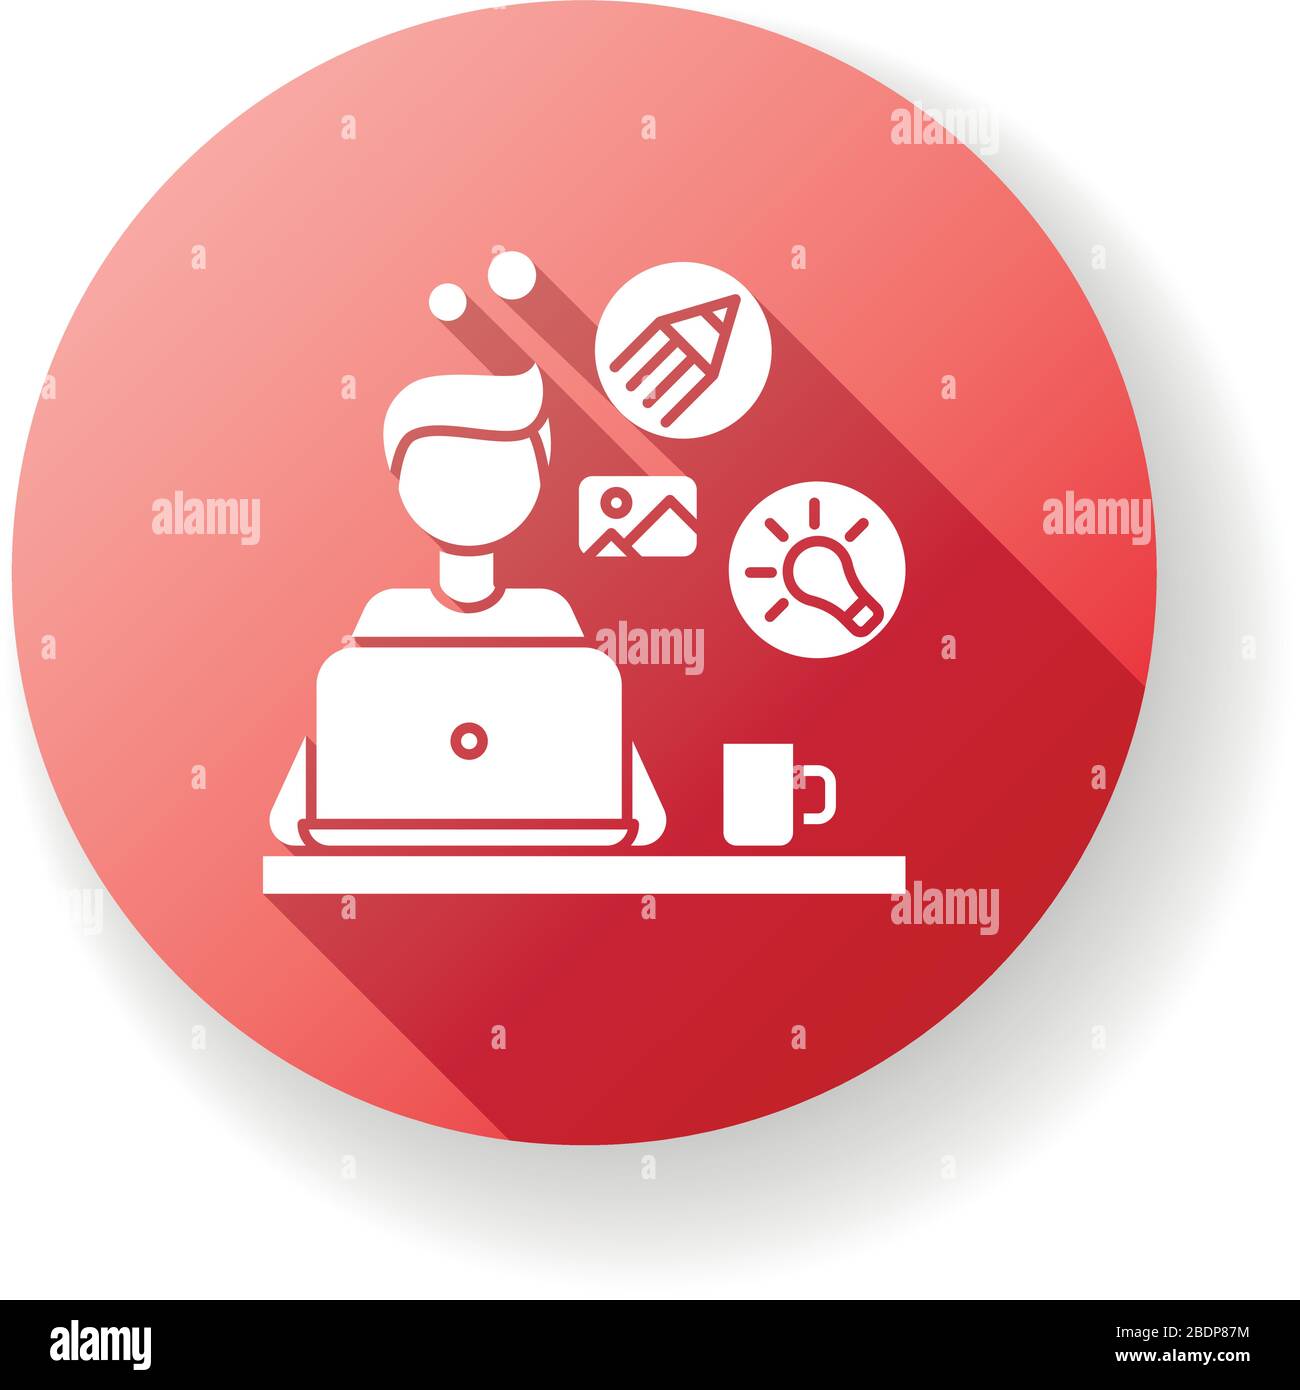 Grafico rosso disegno piatto a lunga ombra icona glifo. Illustratore remoto, editor, artista creativo. Editing grafico, design artistico, online Illustrazione Vettoriale